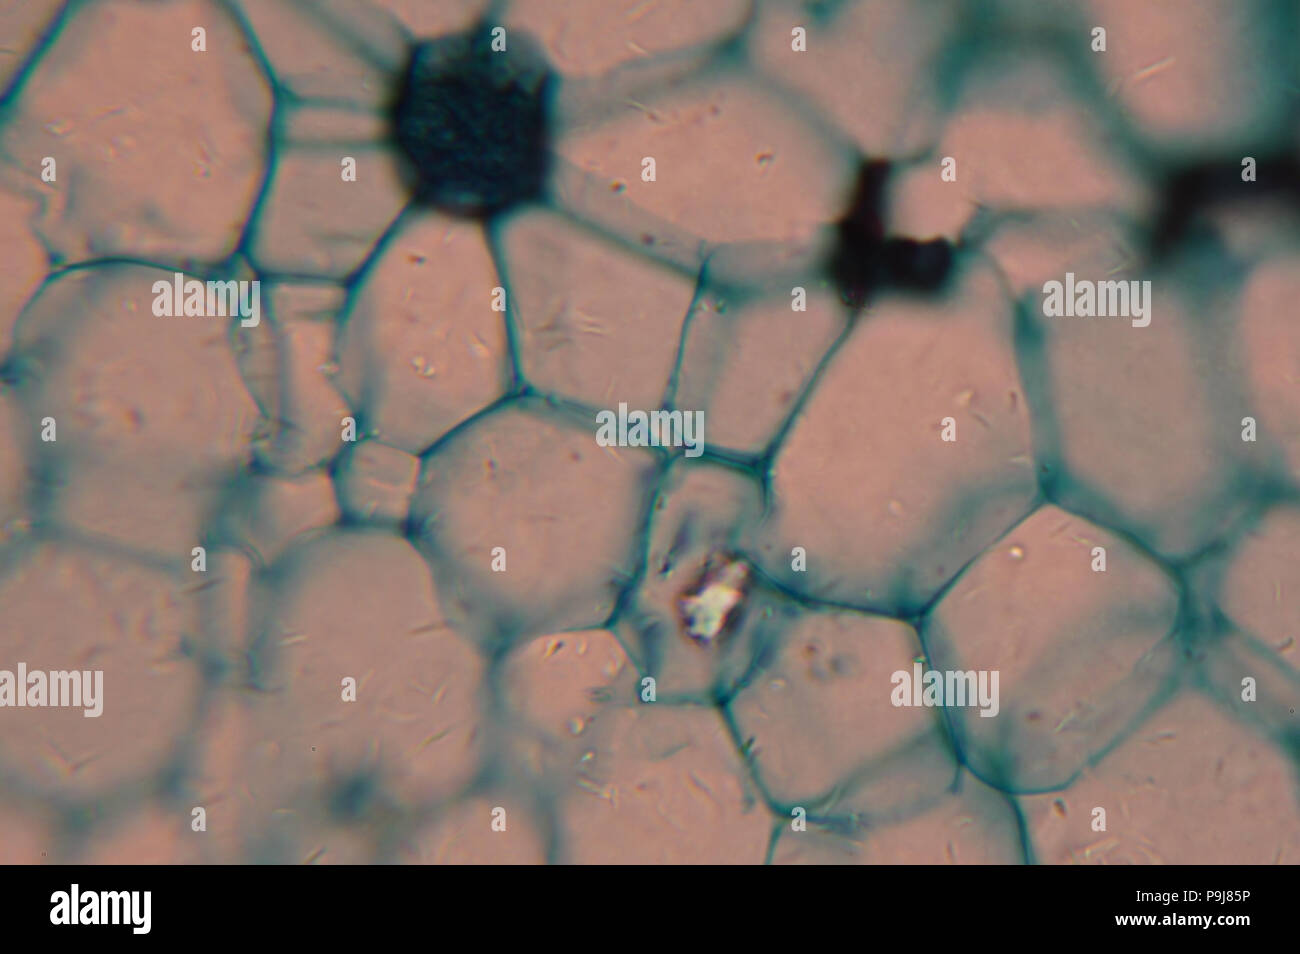 Célula de un organismo vivo en el microscopio. Foto de stock